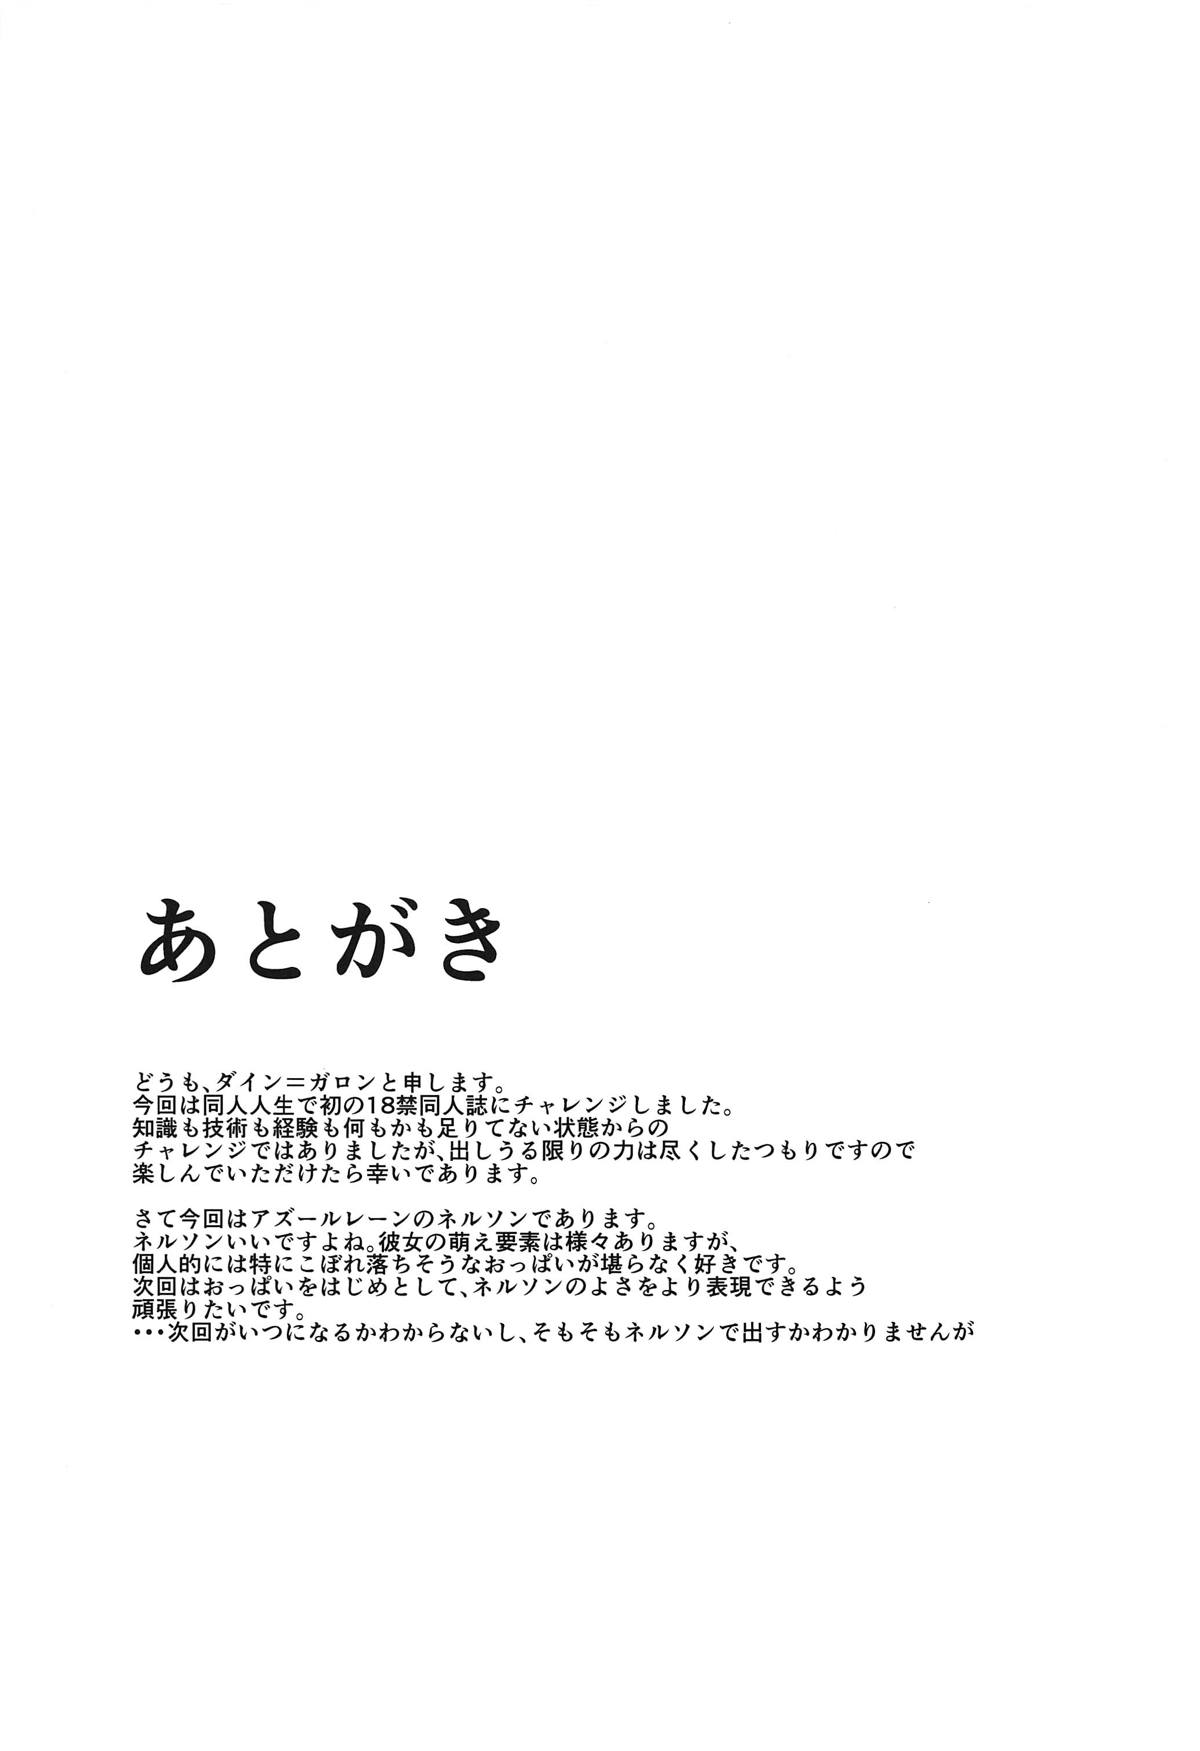 (COMIC1☆14) [お瑕疵の家 (ダイン=ガロン)] ネルソン アフターファイブ (アズールレーン)